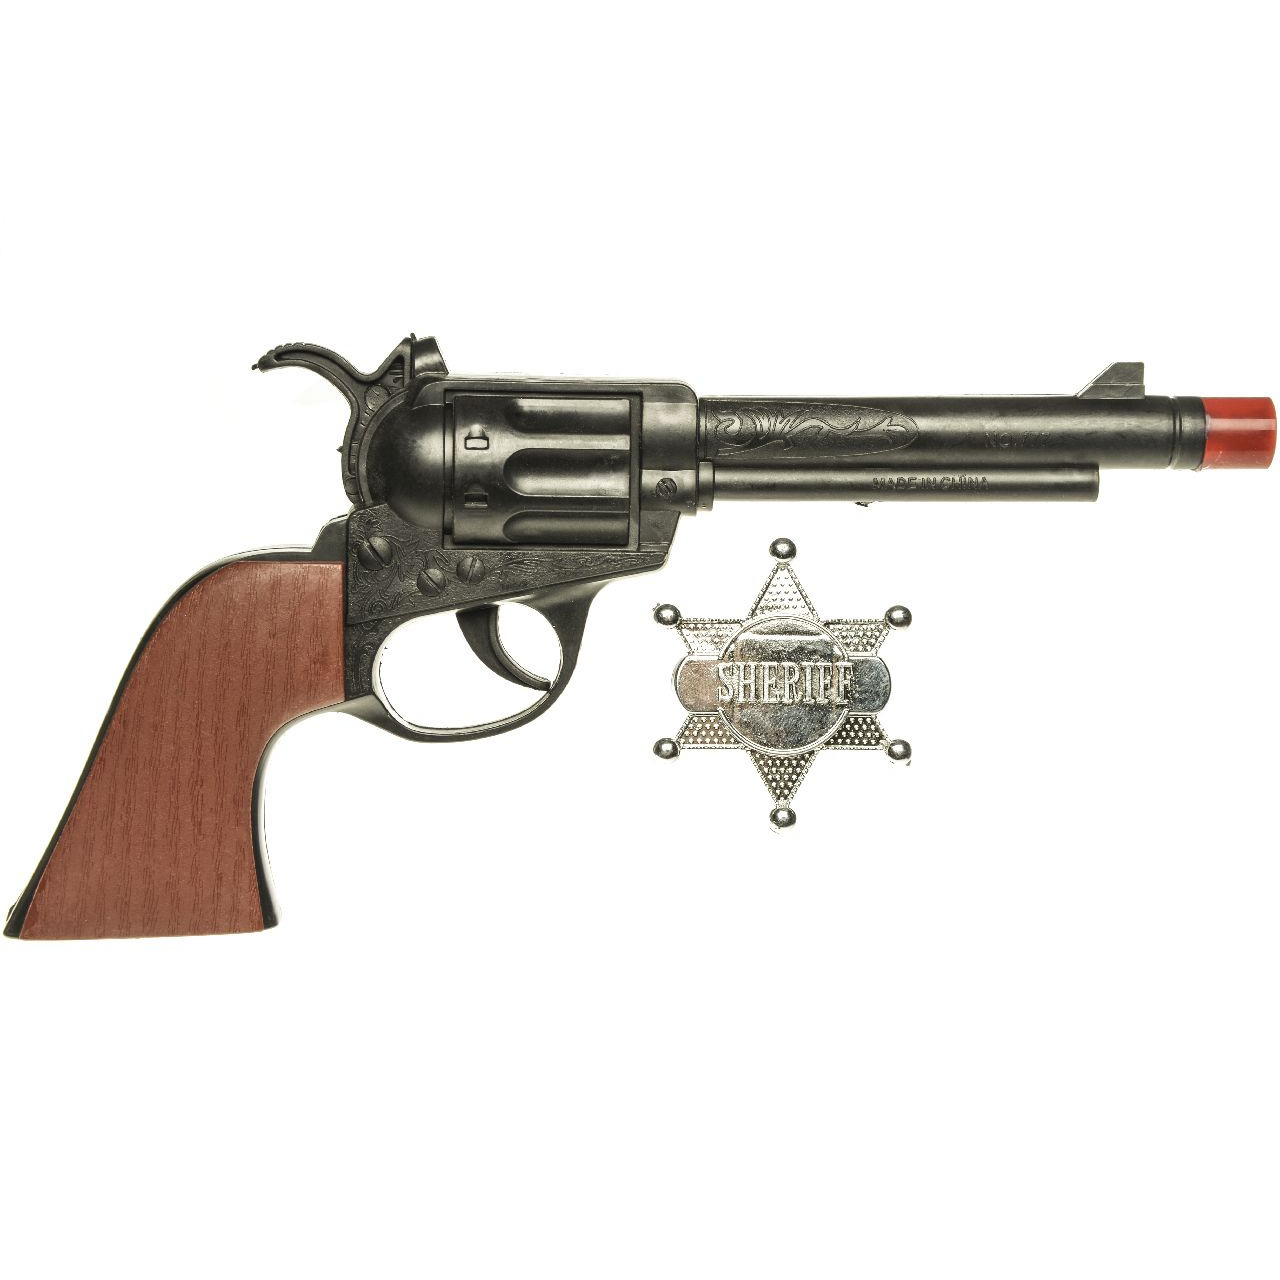 Cowboy speelgoed verkleed pistool zwart met sheriff ster 24 cm